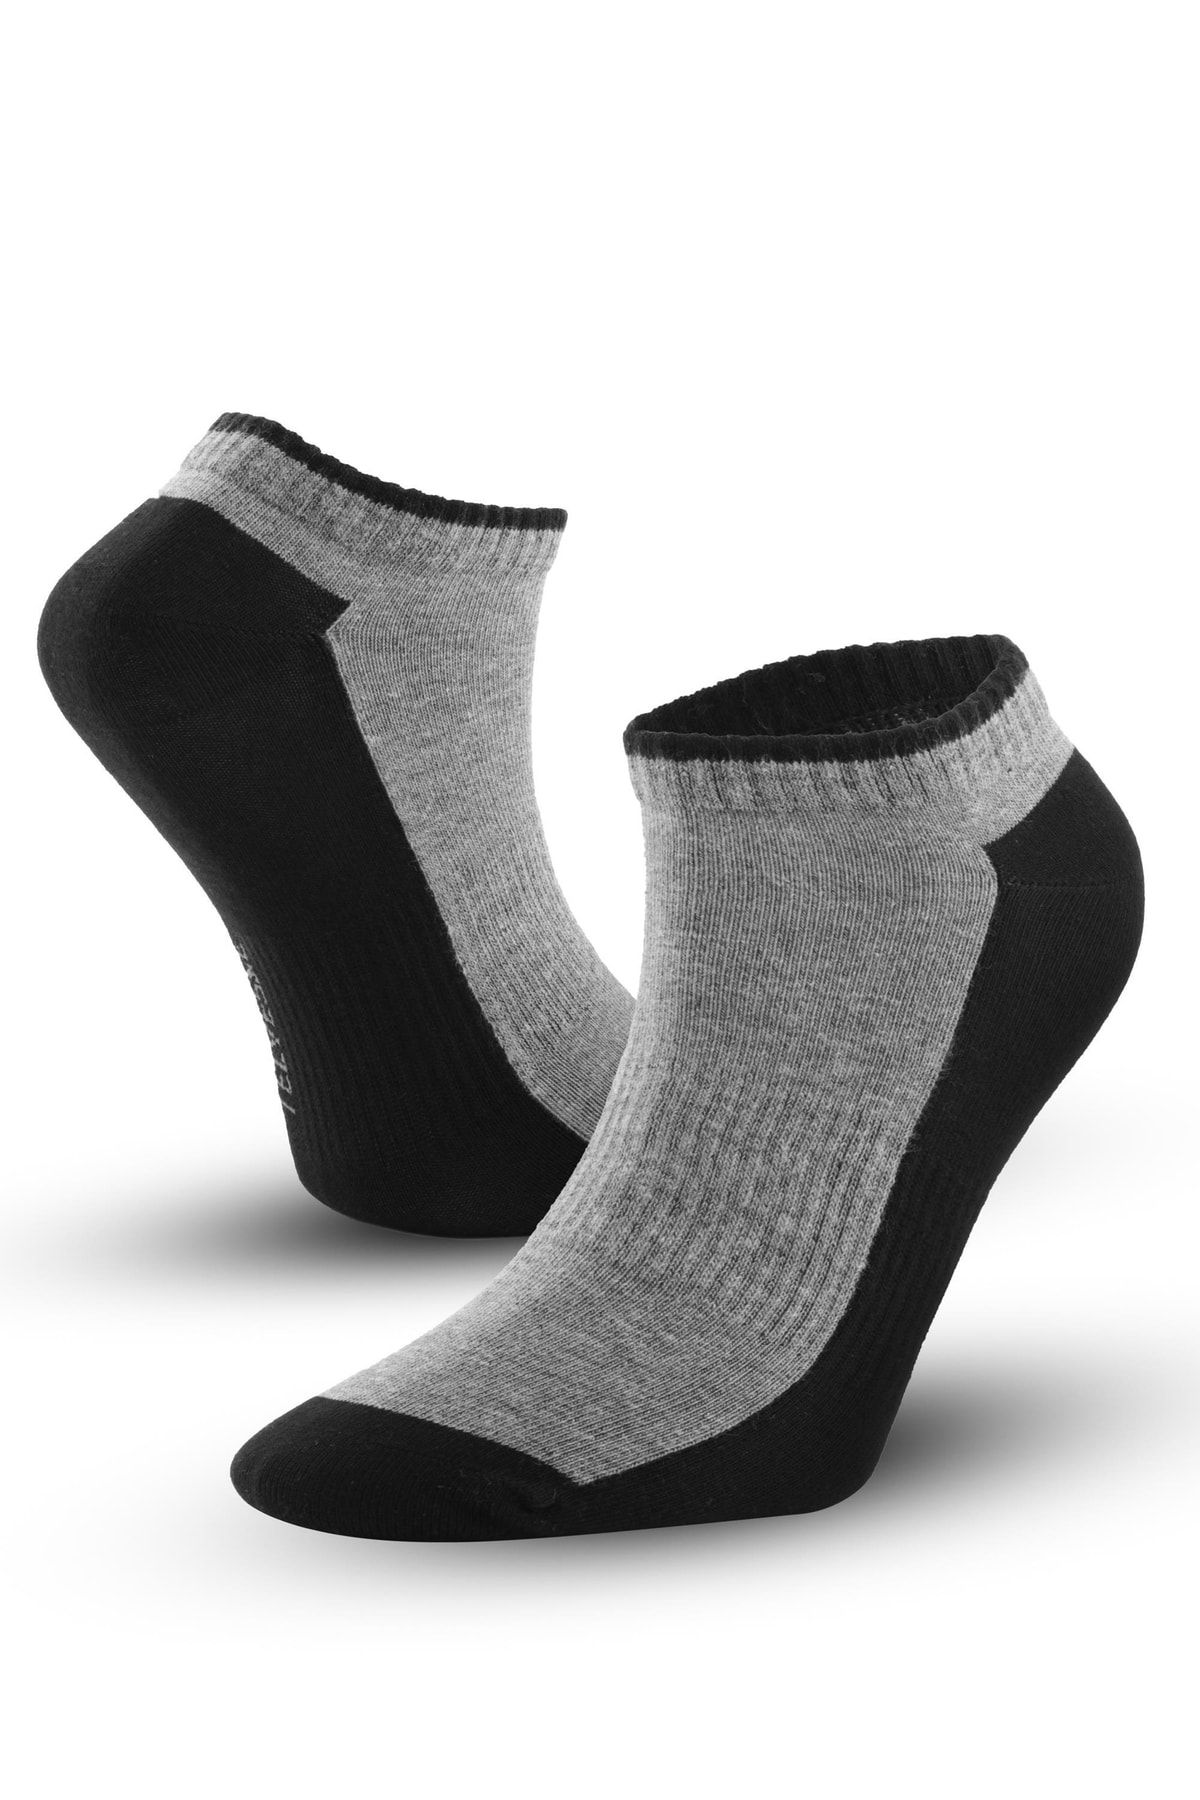 Telvesse Marcher Dikişsiz Patik Çorap Spor Kısa Çift Renkli Kısa Konçlu Spor Çorabı Siyah-gri